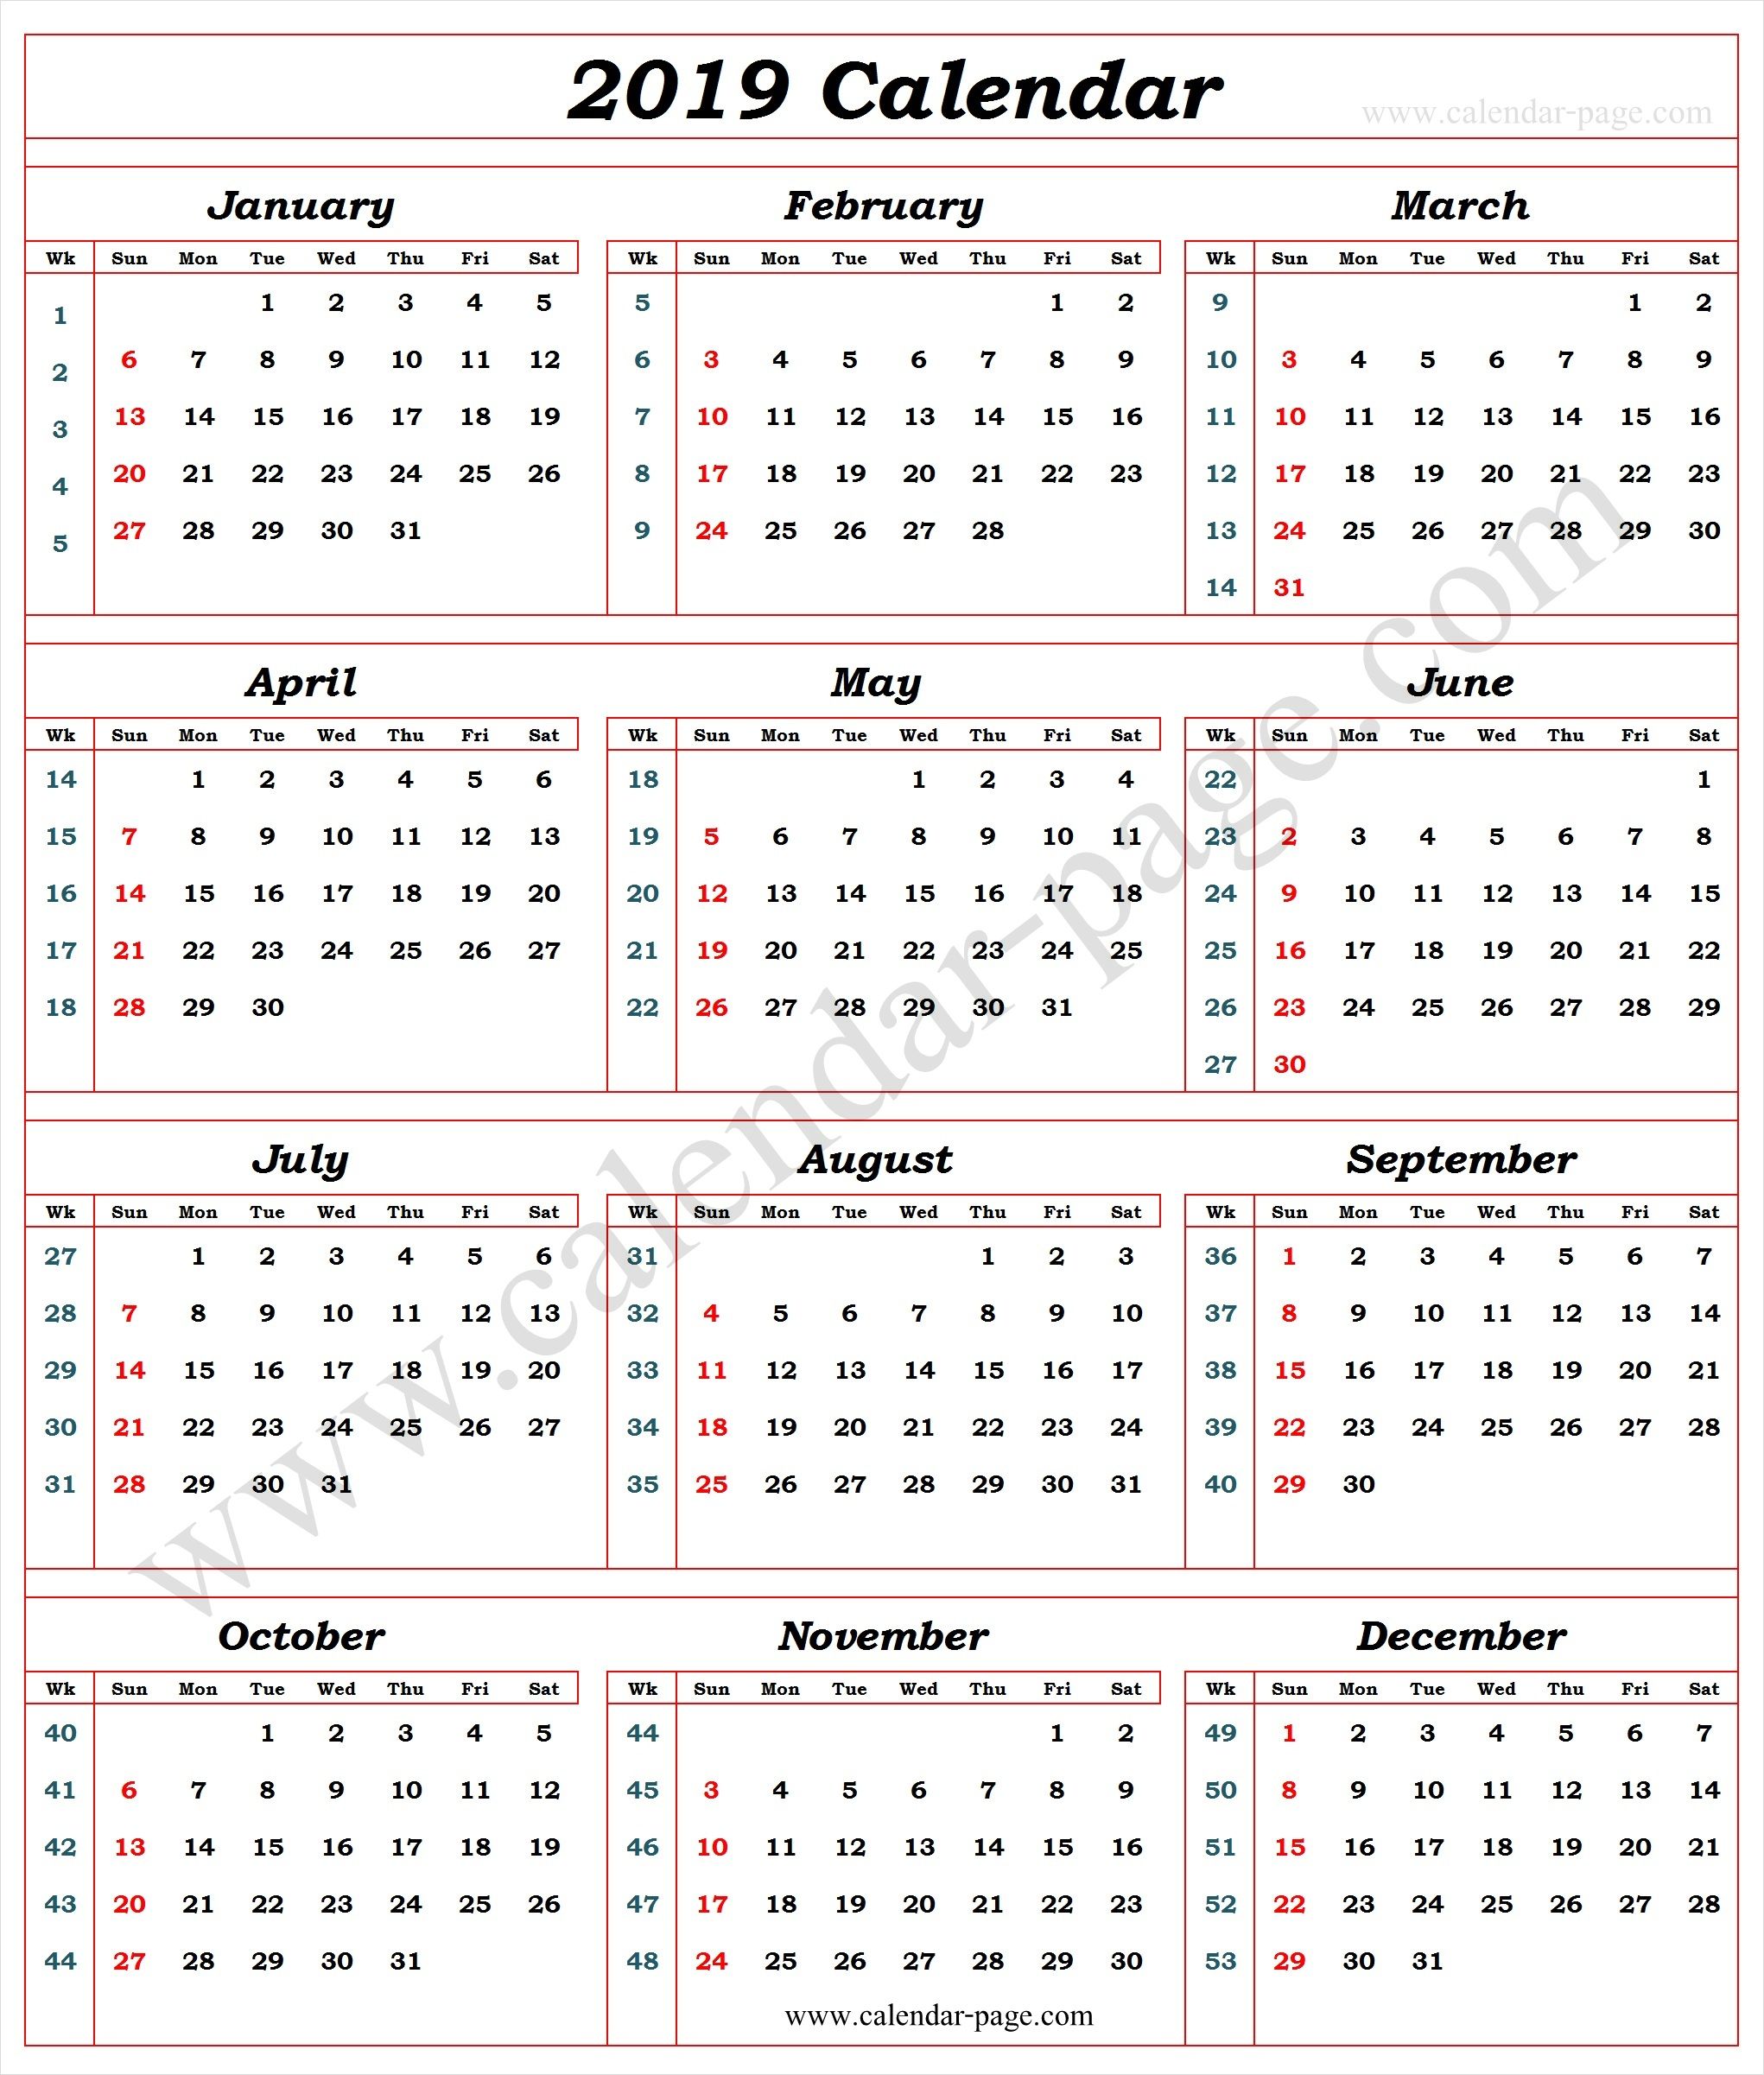 2019 calendar with week numbers